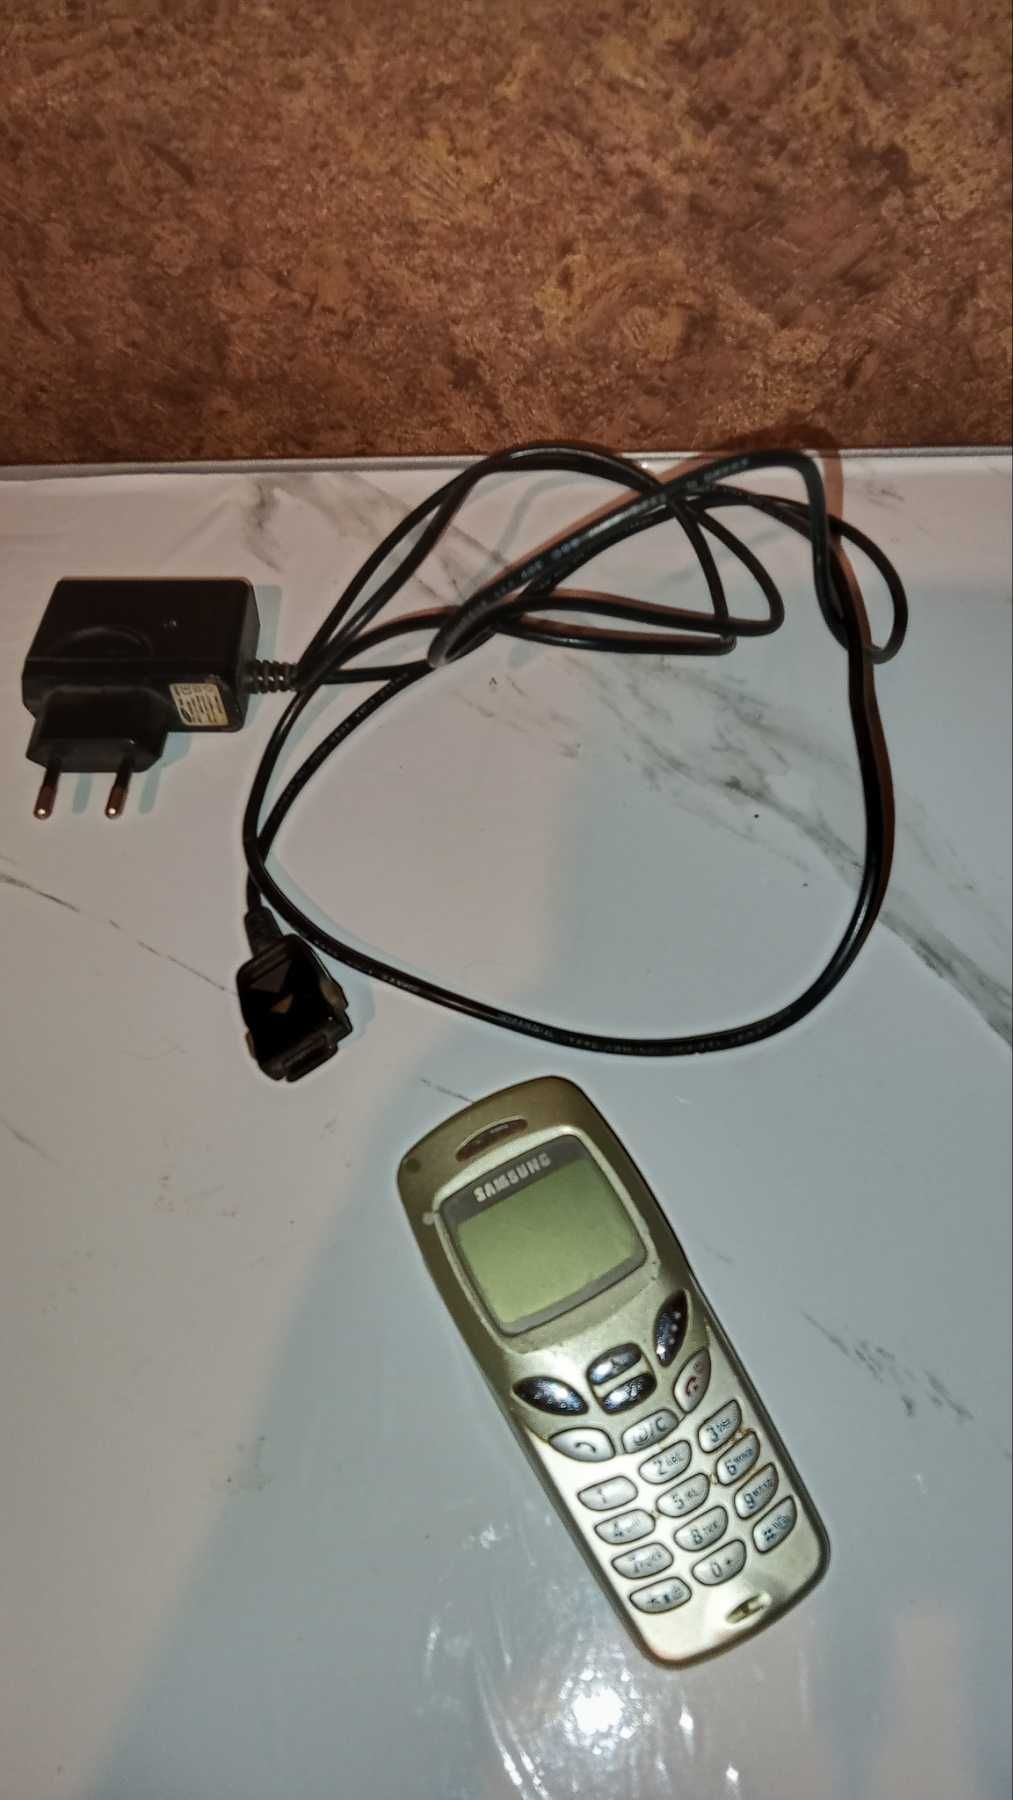 Sony Ericsson Т 100